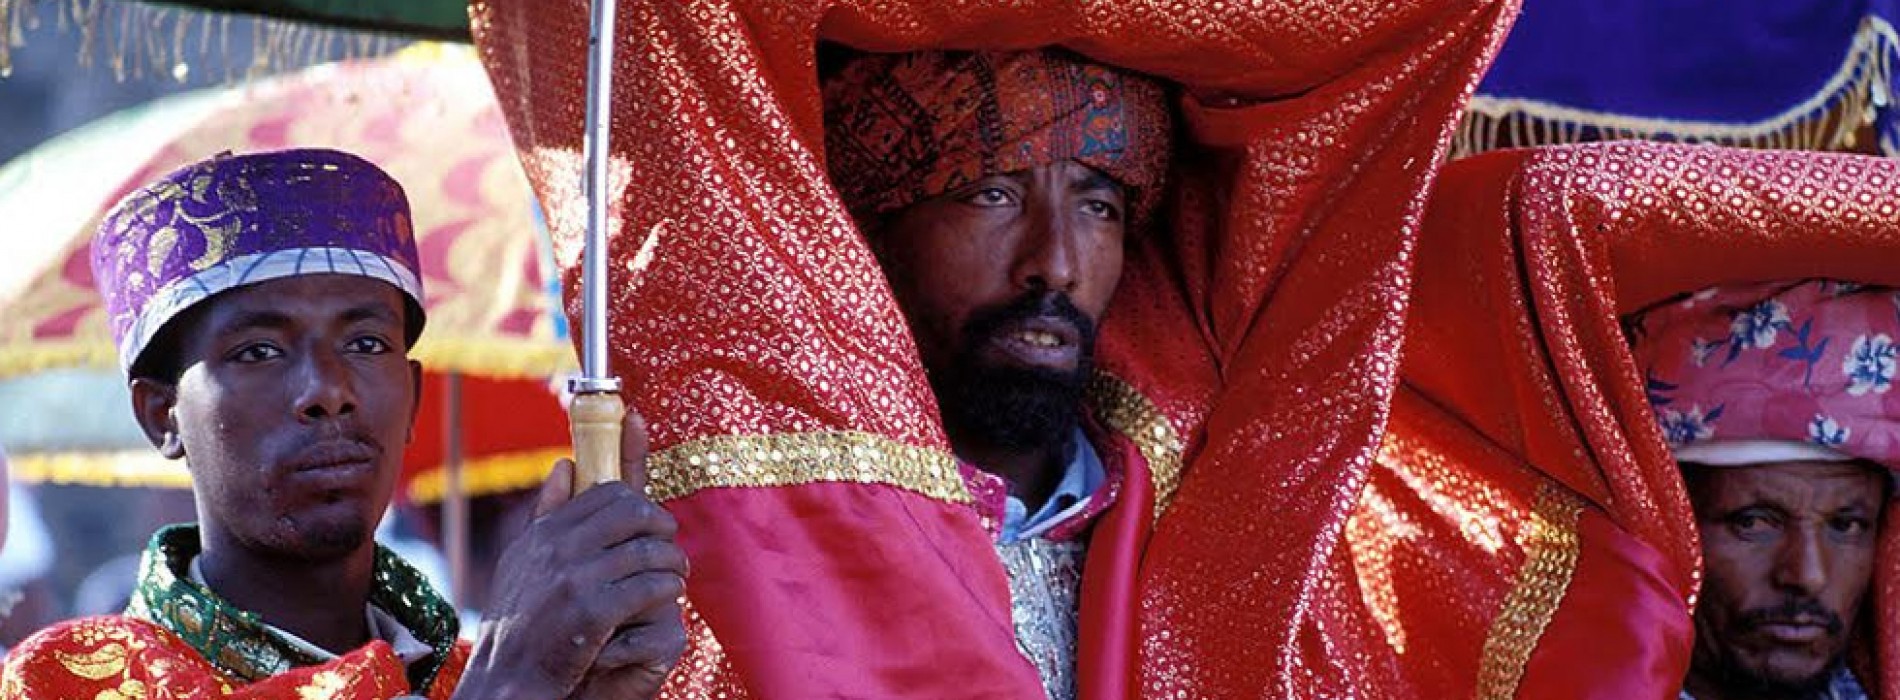 Ethiopia celebrates Christmas on January 7